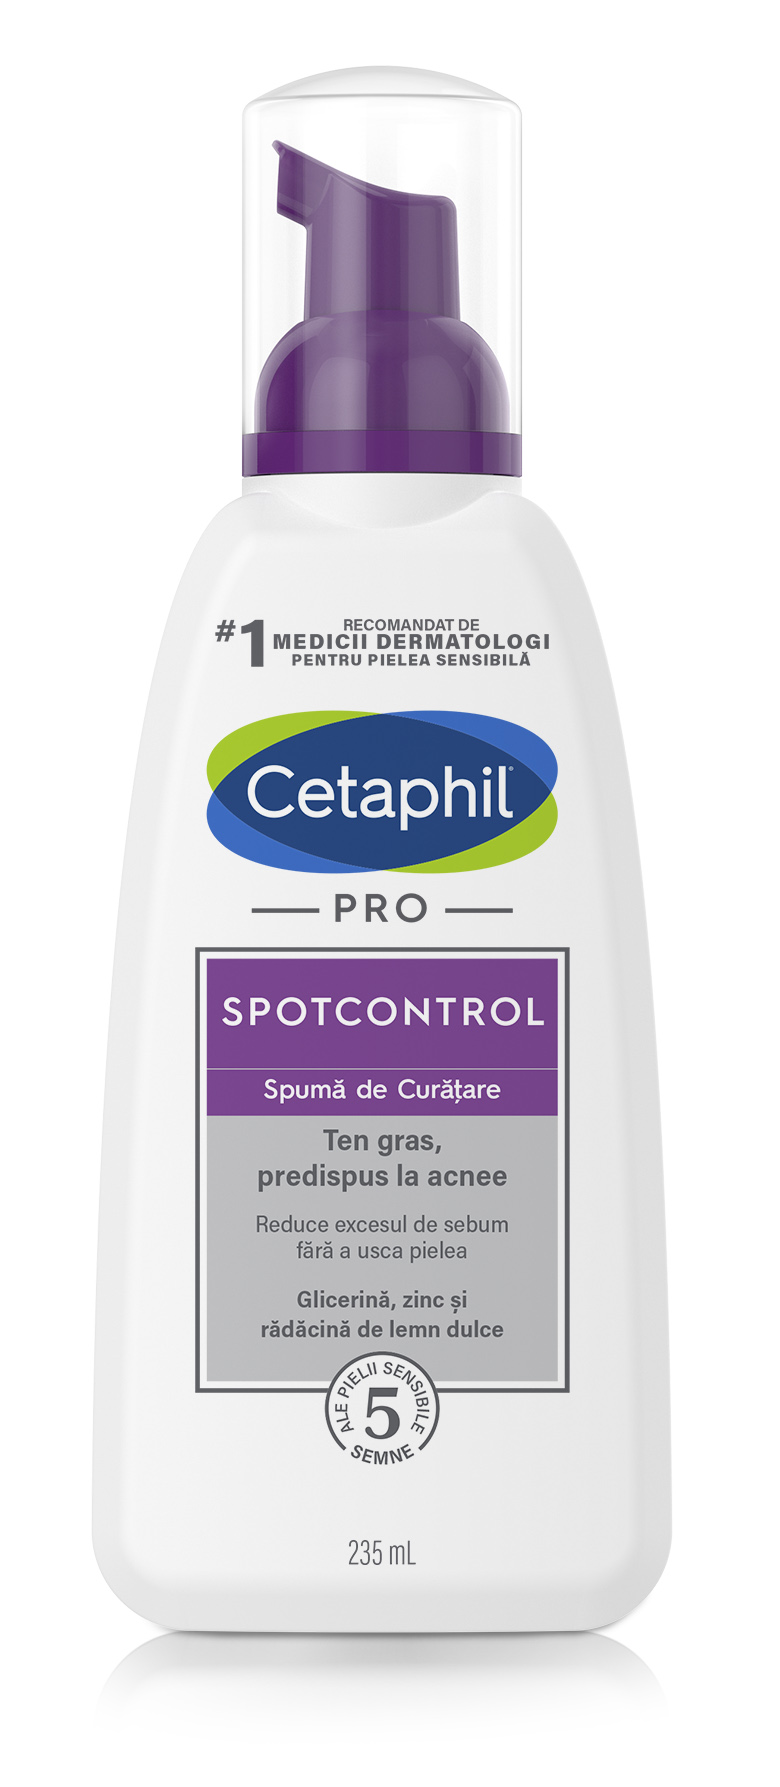 Ingrijire ten gras-acneic - Cetaphil Pro Spot Control spuma de curatare x 235ml, medik-on.ro